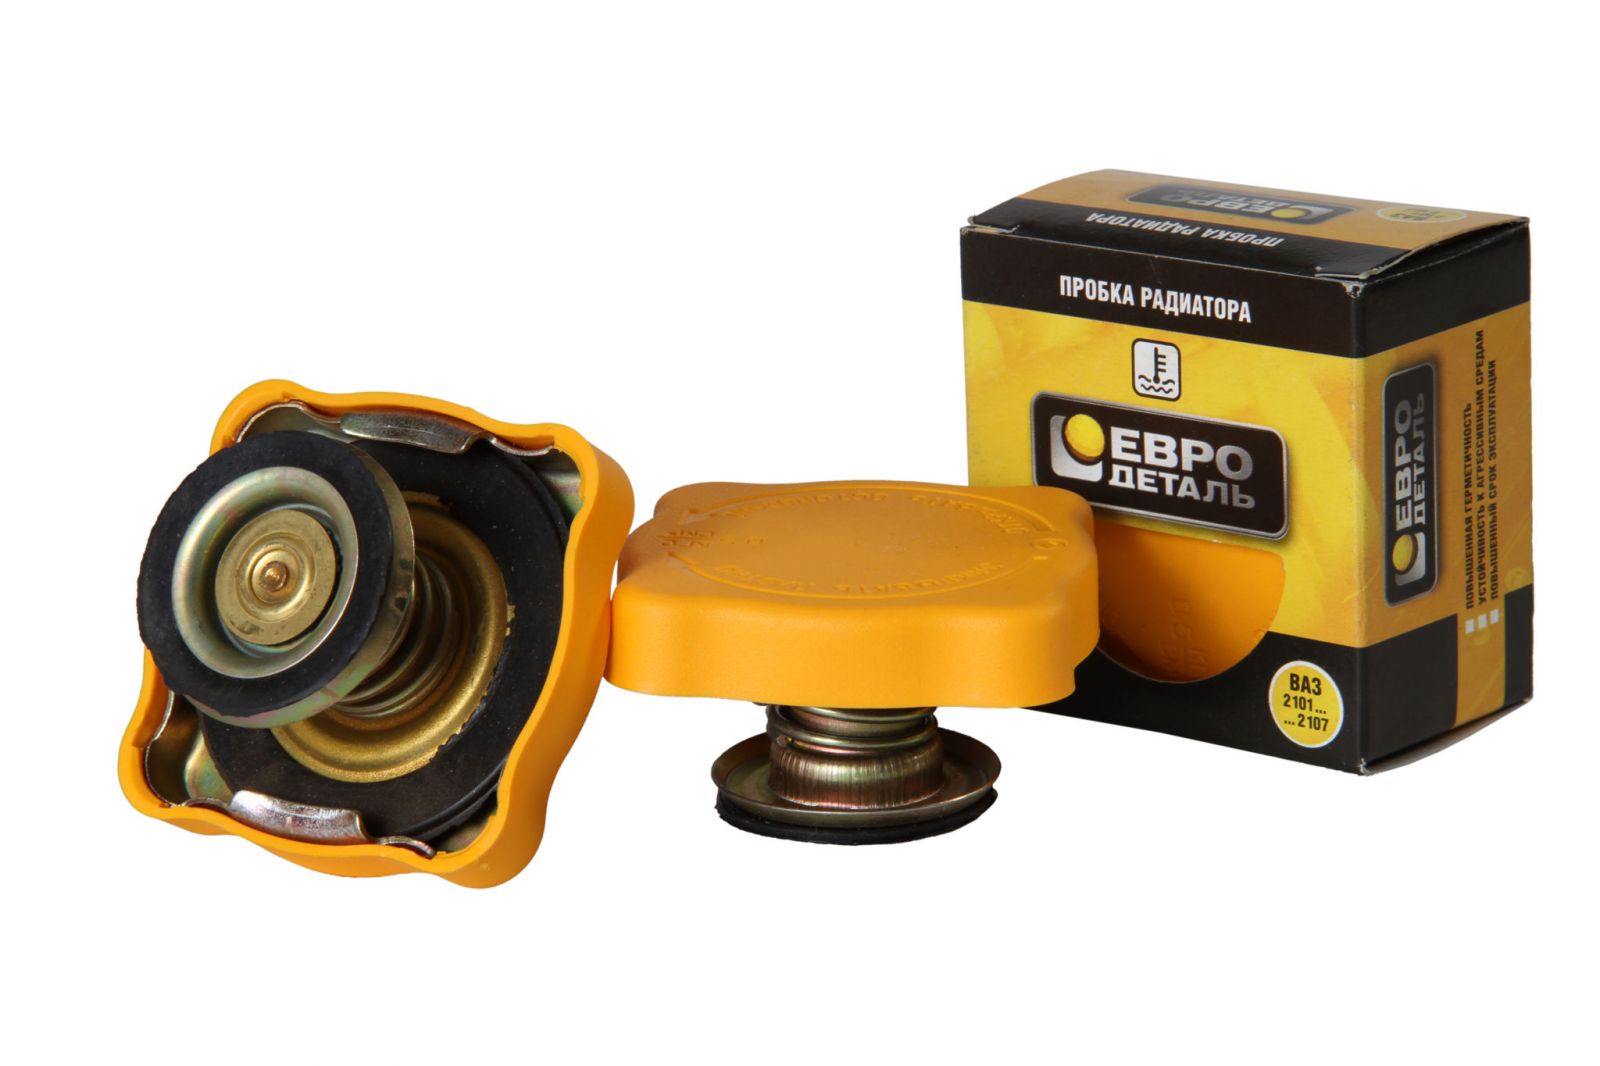 Крышка радиатора ВАЗ 2101 метал/пластмасса желтая ЕвроДеталь 2101-1304010 от магазина А-маркет